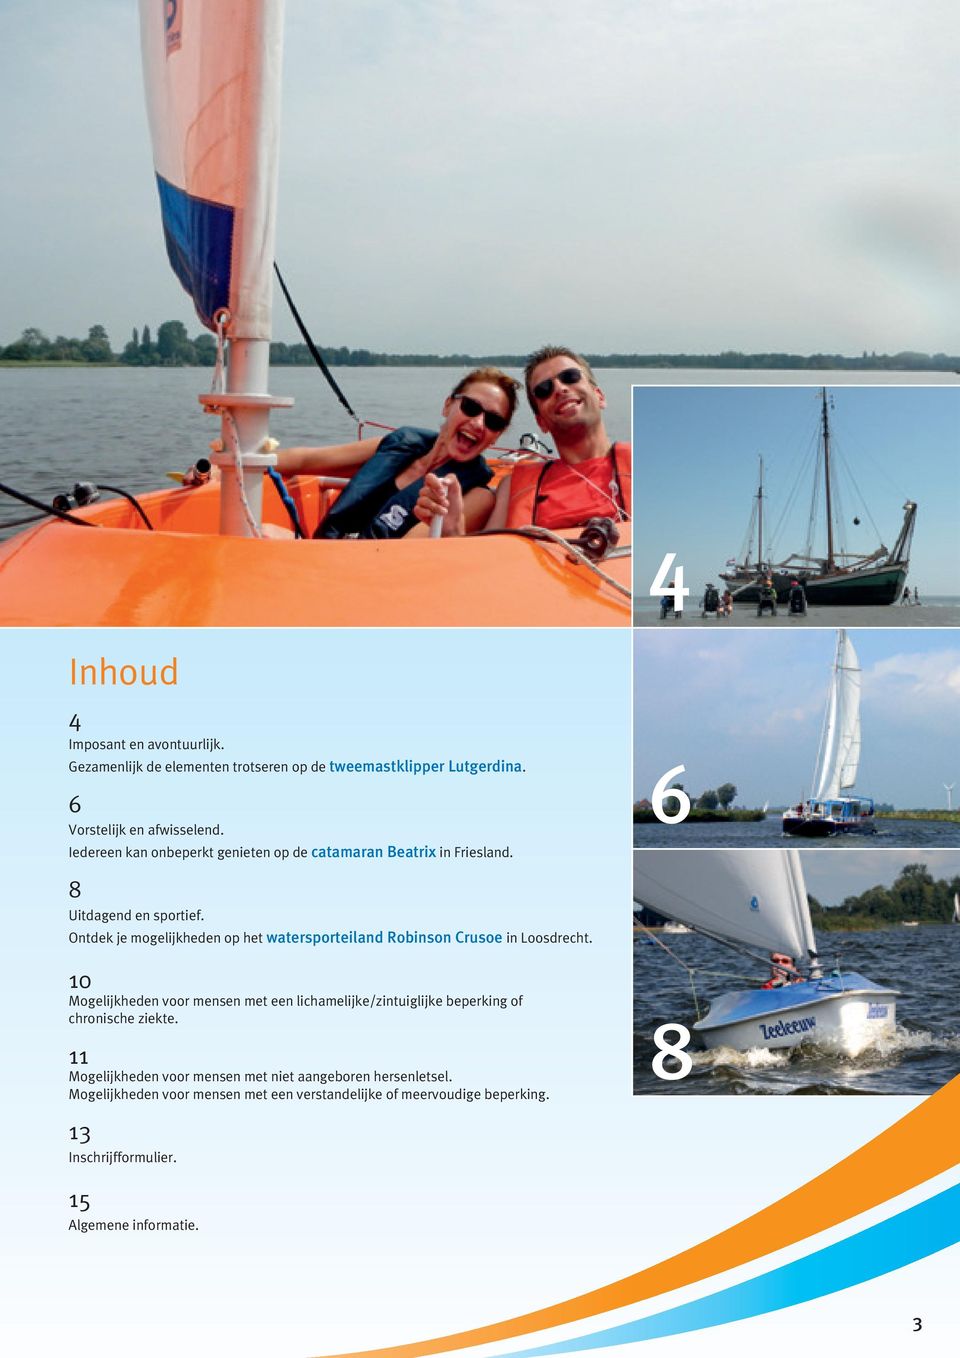 Ontdek je mogelijkheden op het watersporteiland Robinson Crusoe in Loosdrecht.